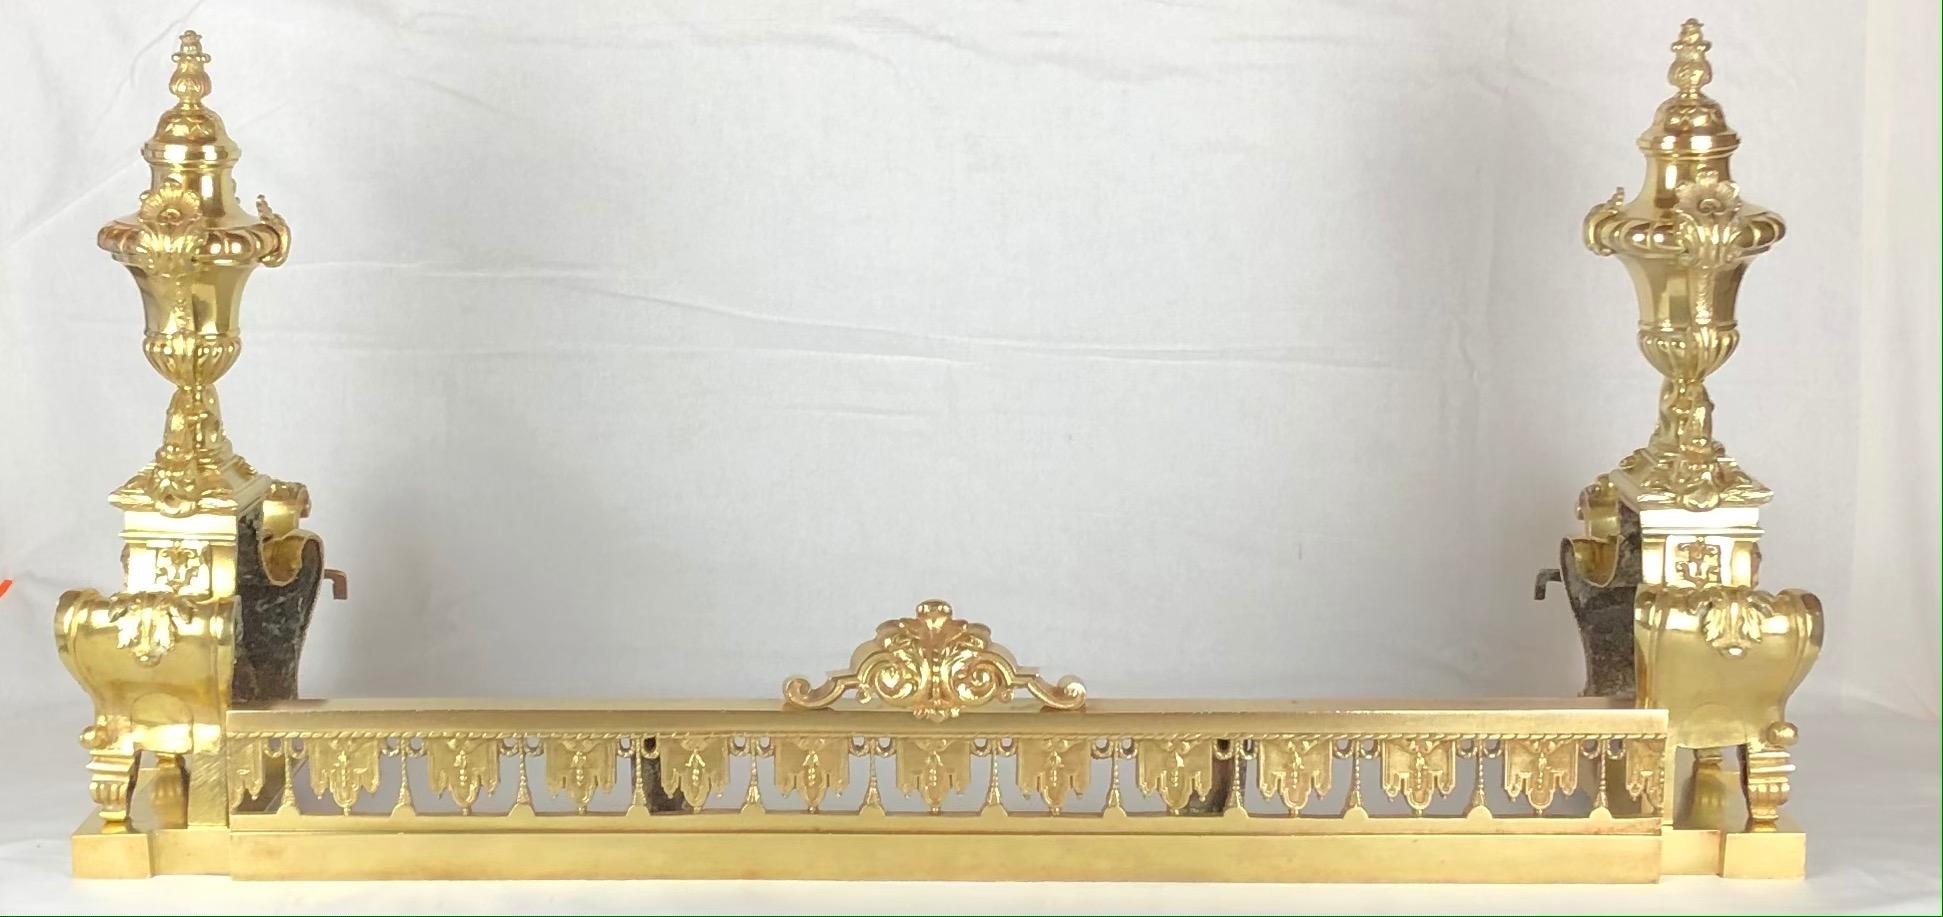 Exquis chenets ou chenets français de style Louis XVI en bronze doré avec une urne centrale présentant des festons (fleurs, feuillages et fruits) de chaque côté et un fleuron en forme de flamme sur le dessus.

Cette paire de chenets magnifiquement